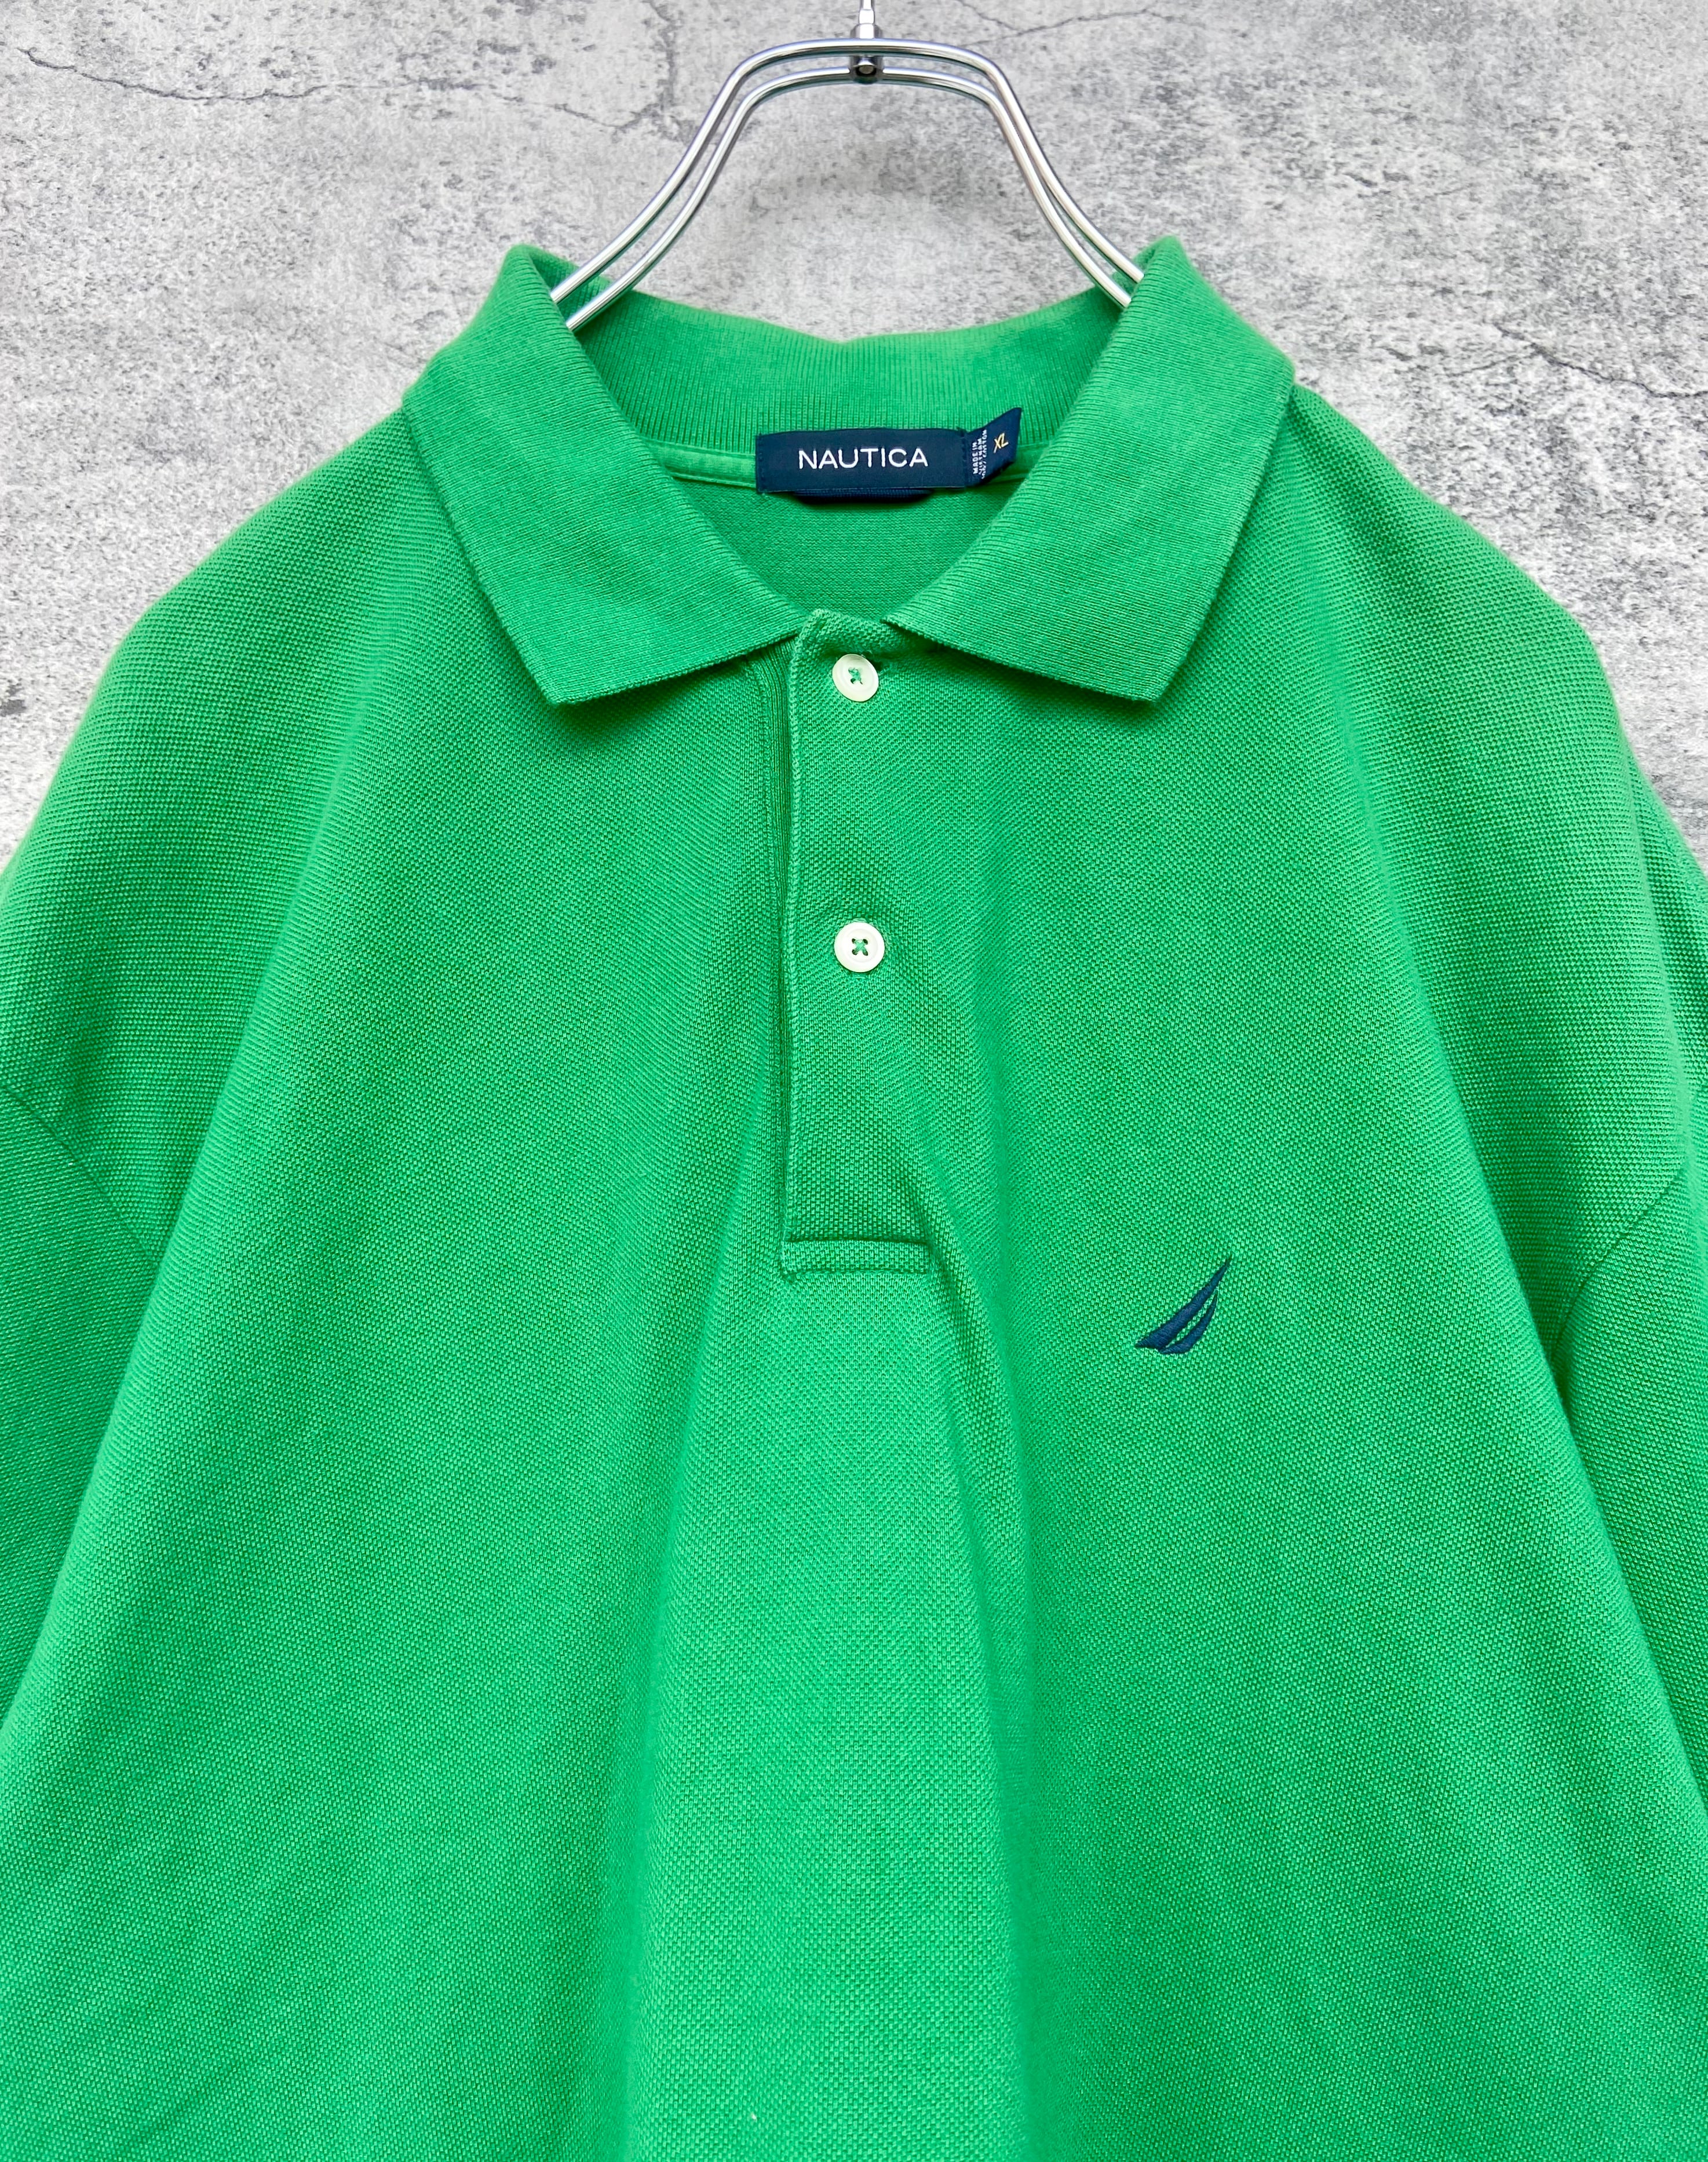 ノーティカ ポロシャツ  刺繍ワンポイント ビックサイズ XL  緑